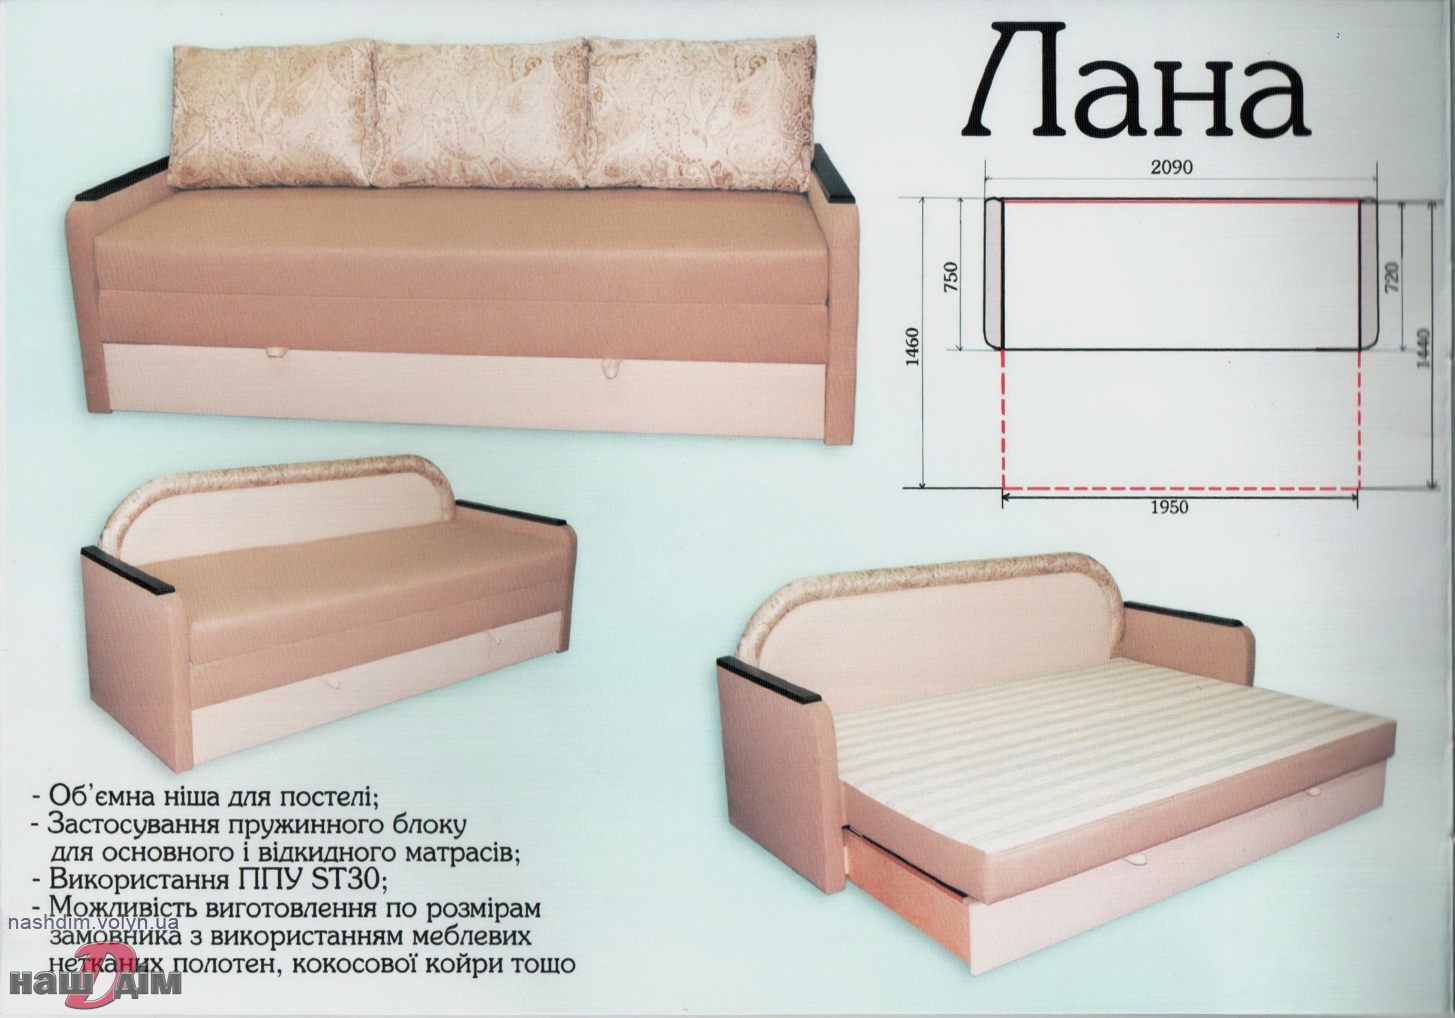  Лана диван розкладний :: виробник меблів Юра ID523-4 параметри та ціна